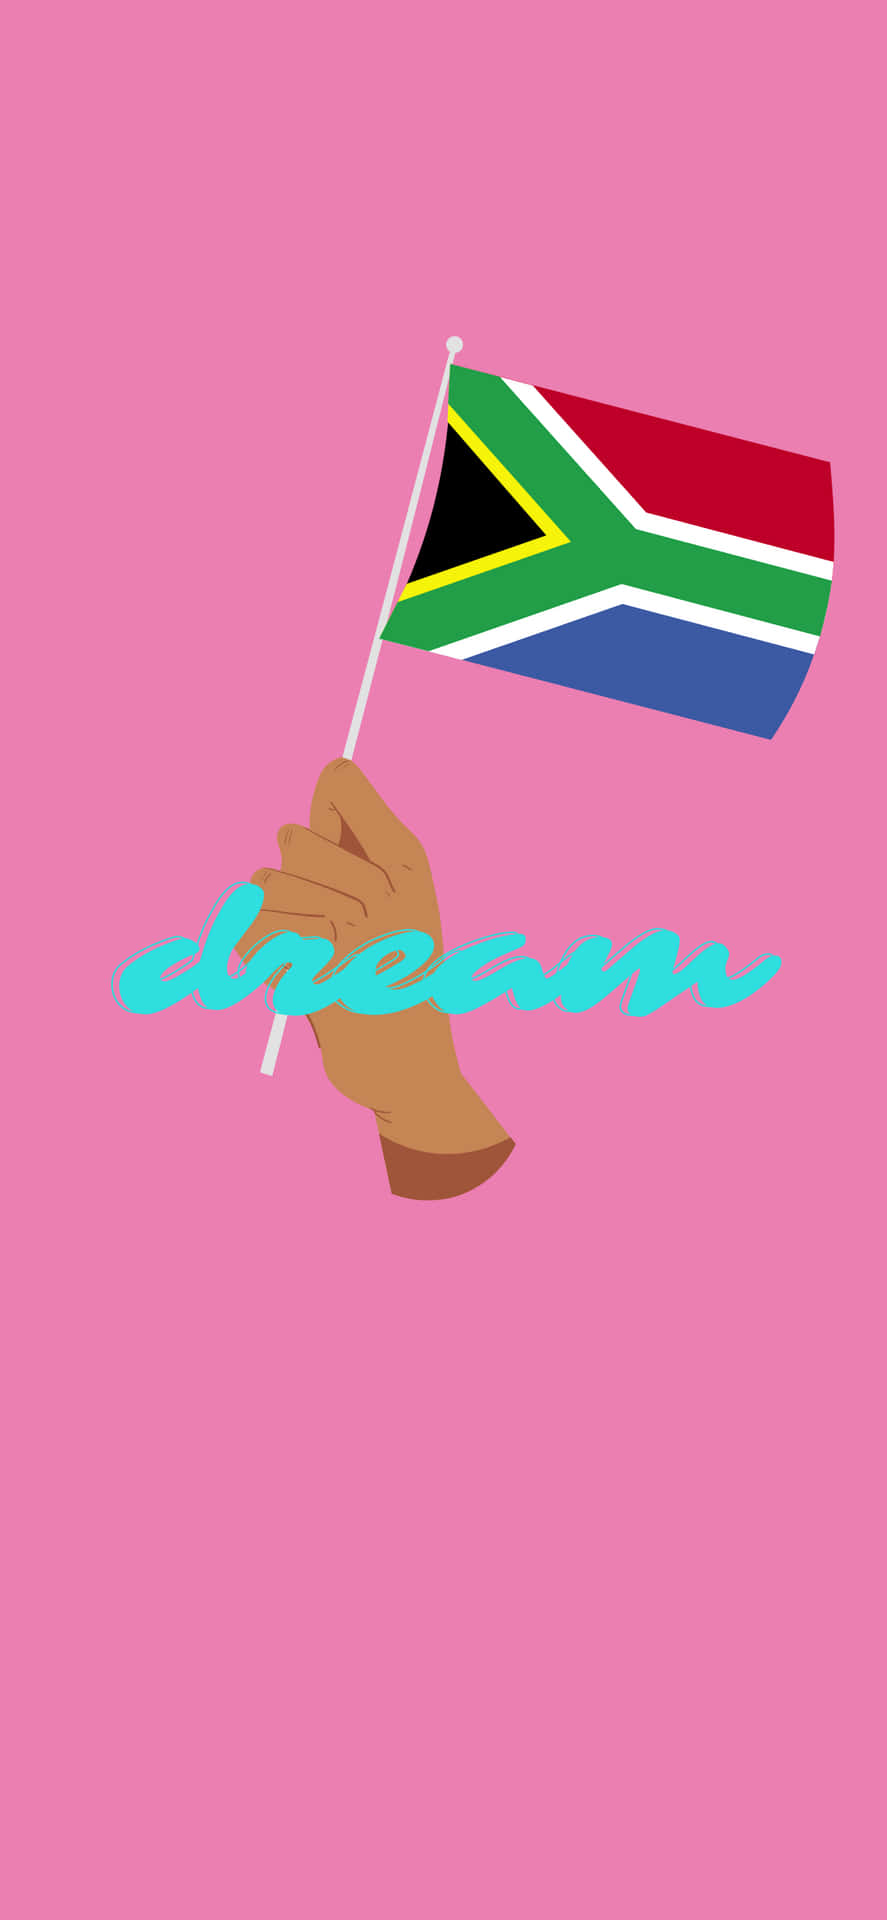 Enhand Som Håller En Flagga Med Ordet Sydafrika På Den.